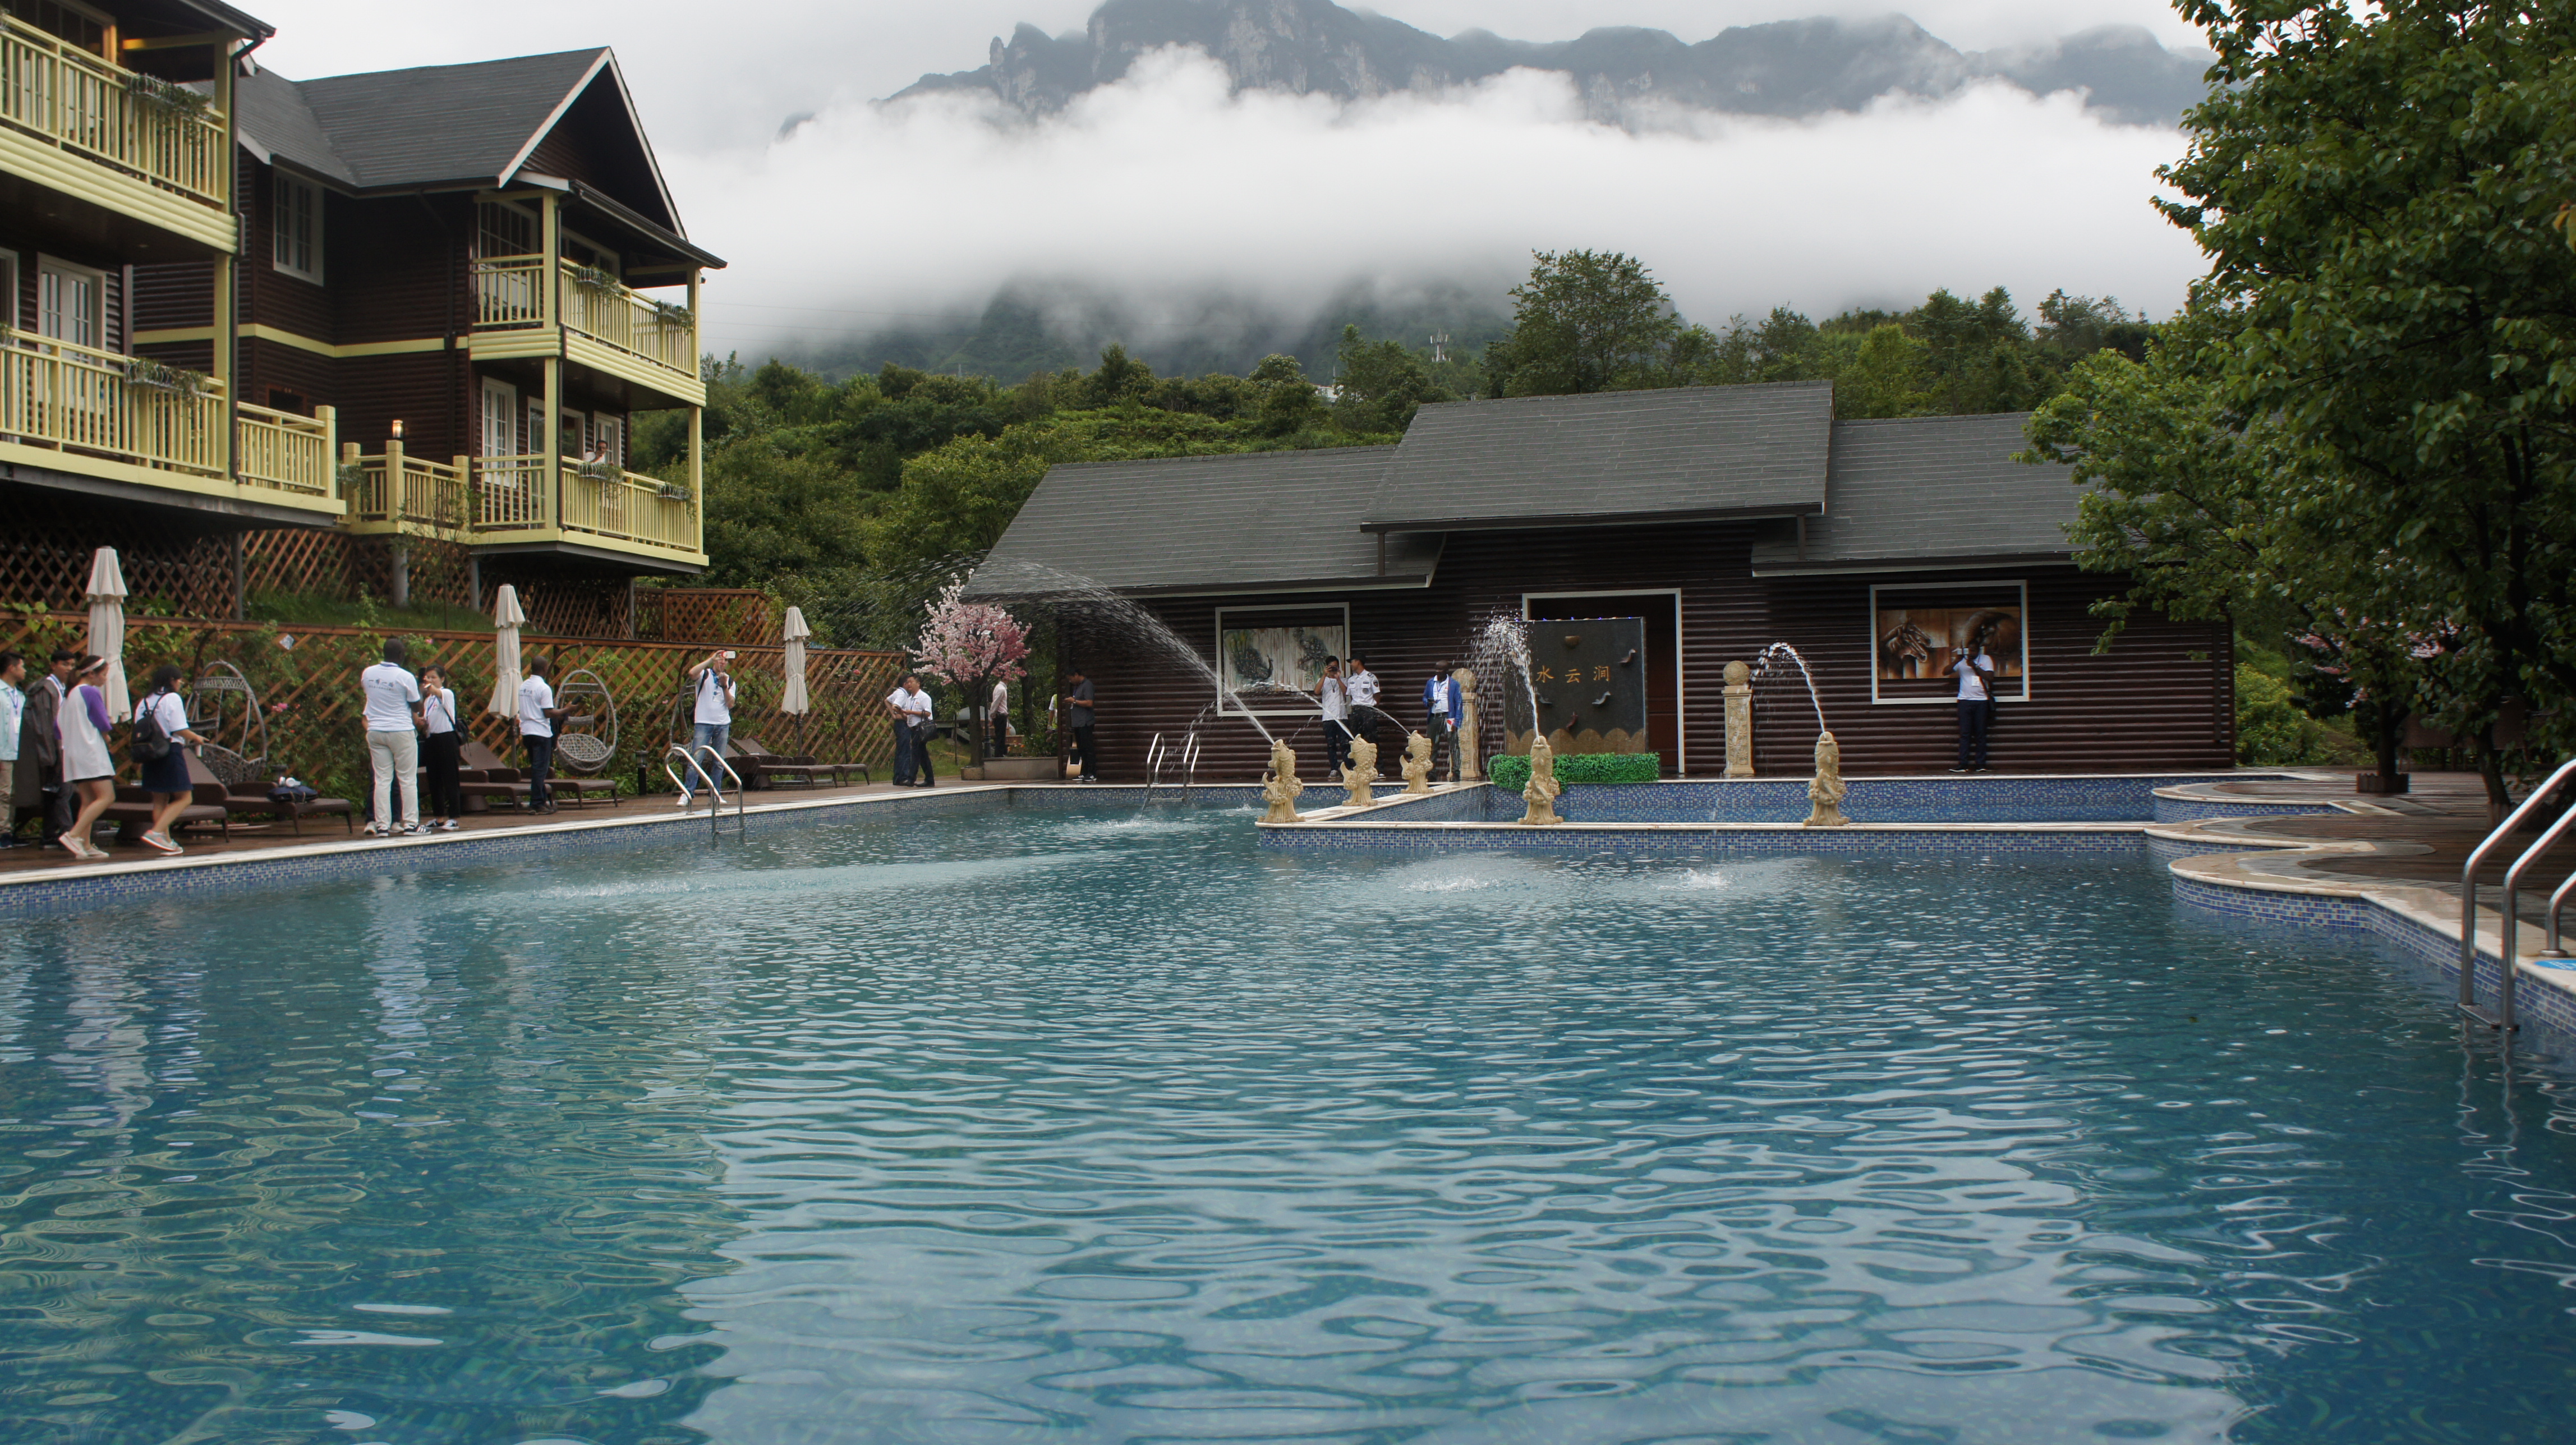 류판수이 바이처 마을의 주민들이 세워 운영하는 온천 호텔의 수영장 전경